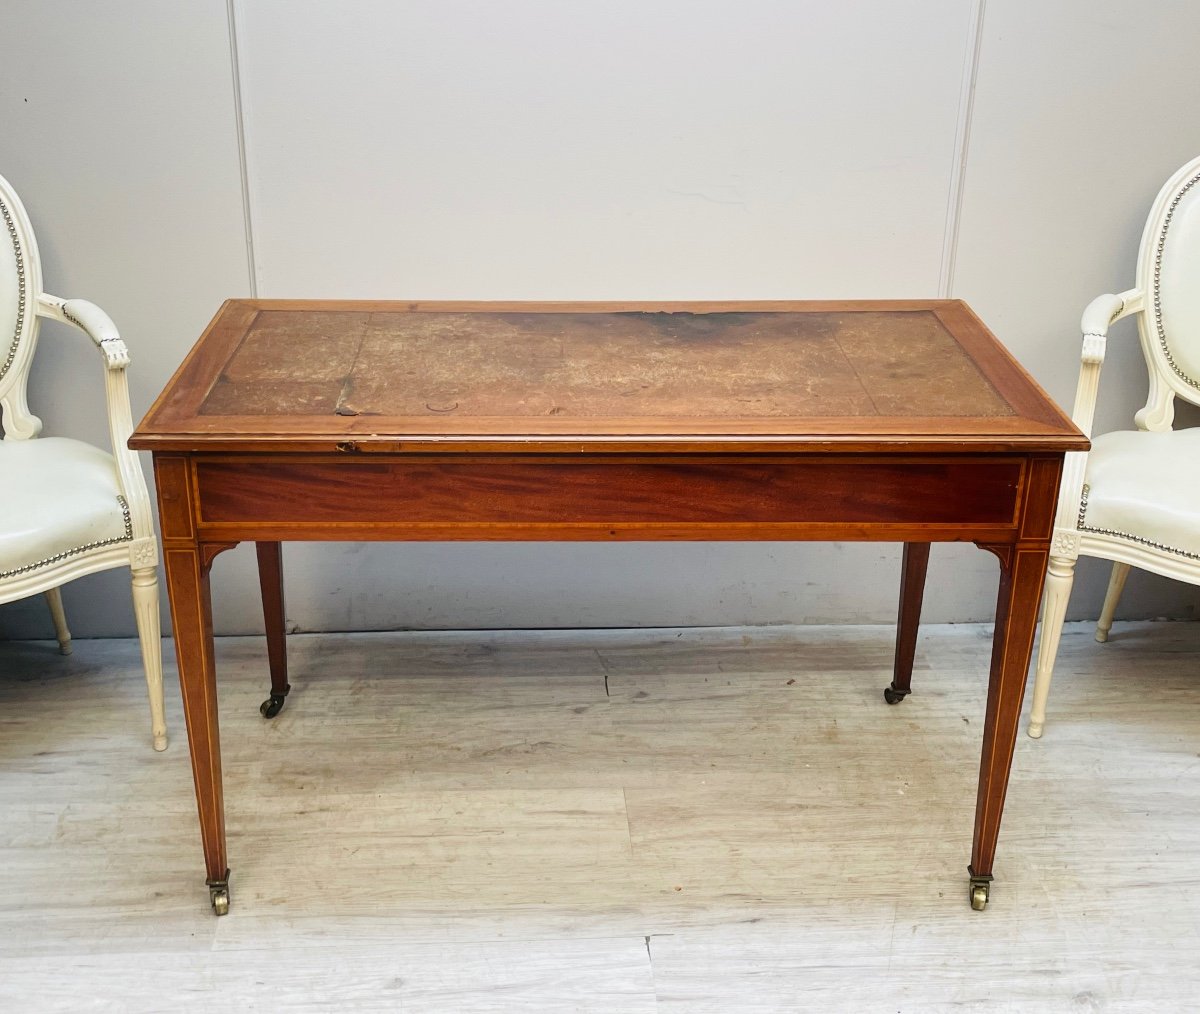 Flat Mahogany Desk From The 19th Century -photo-4